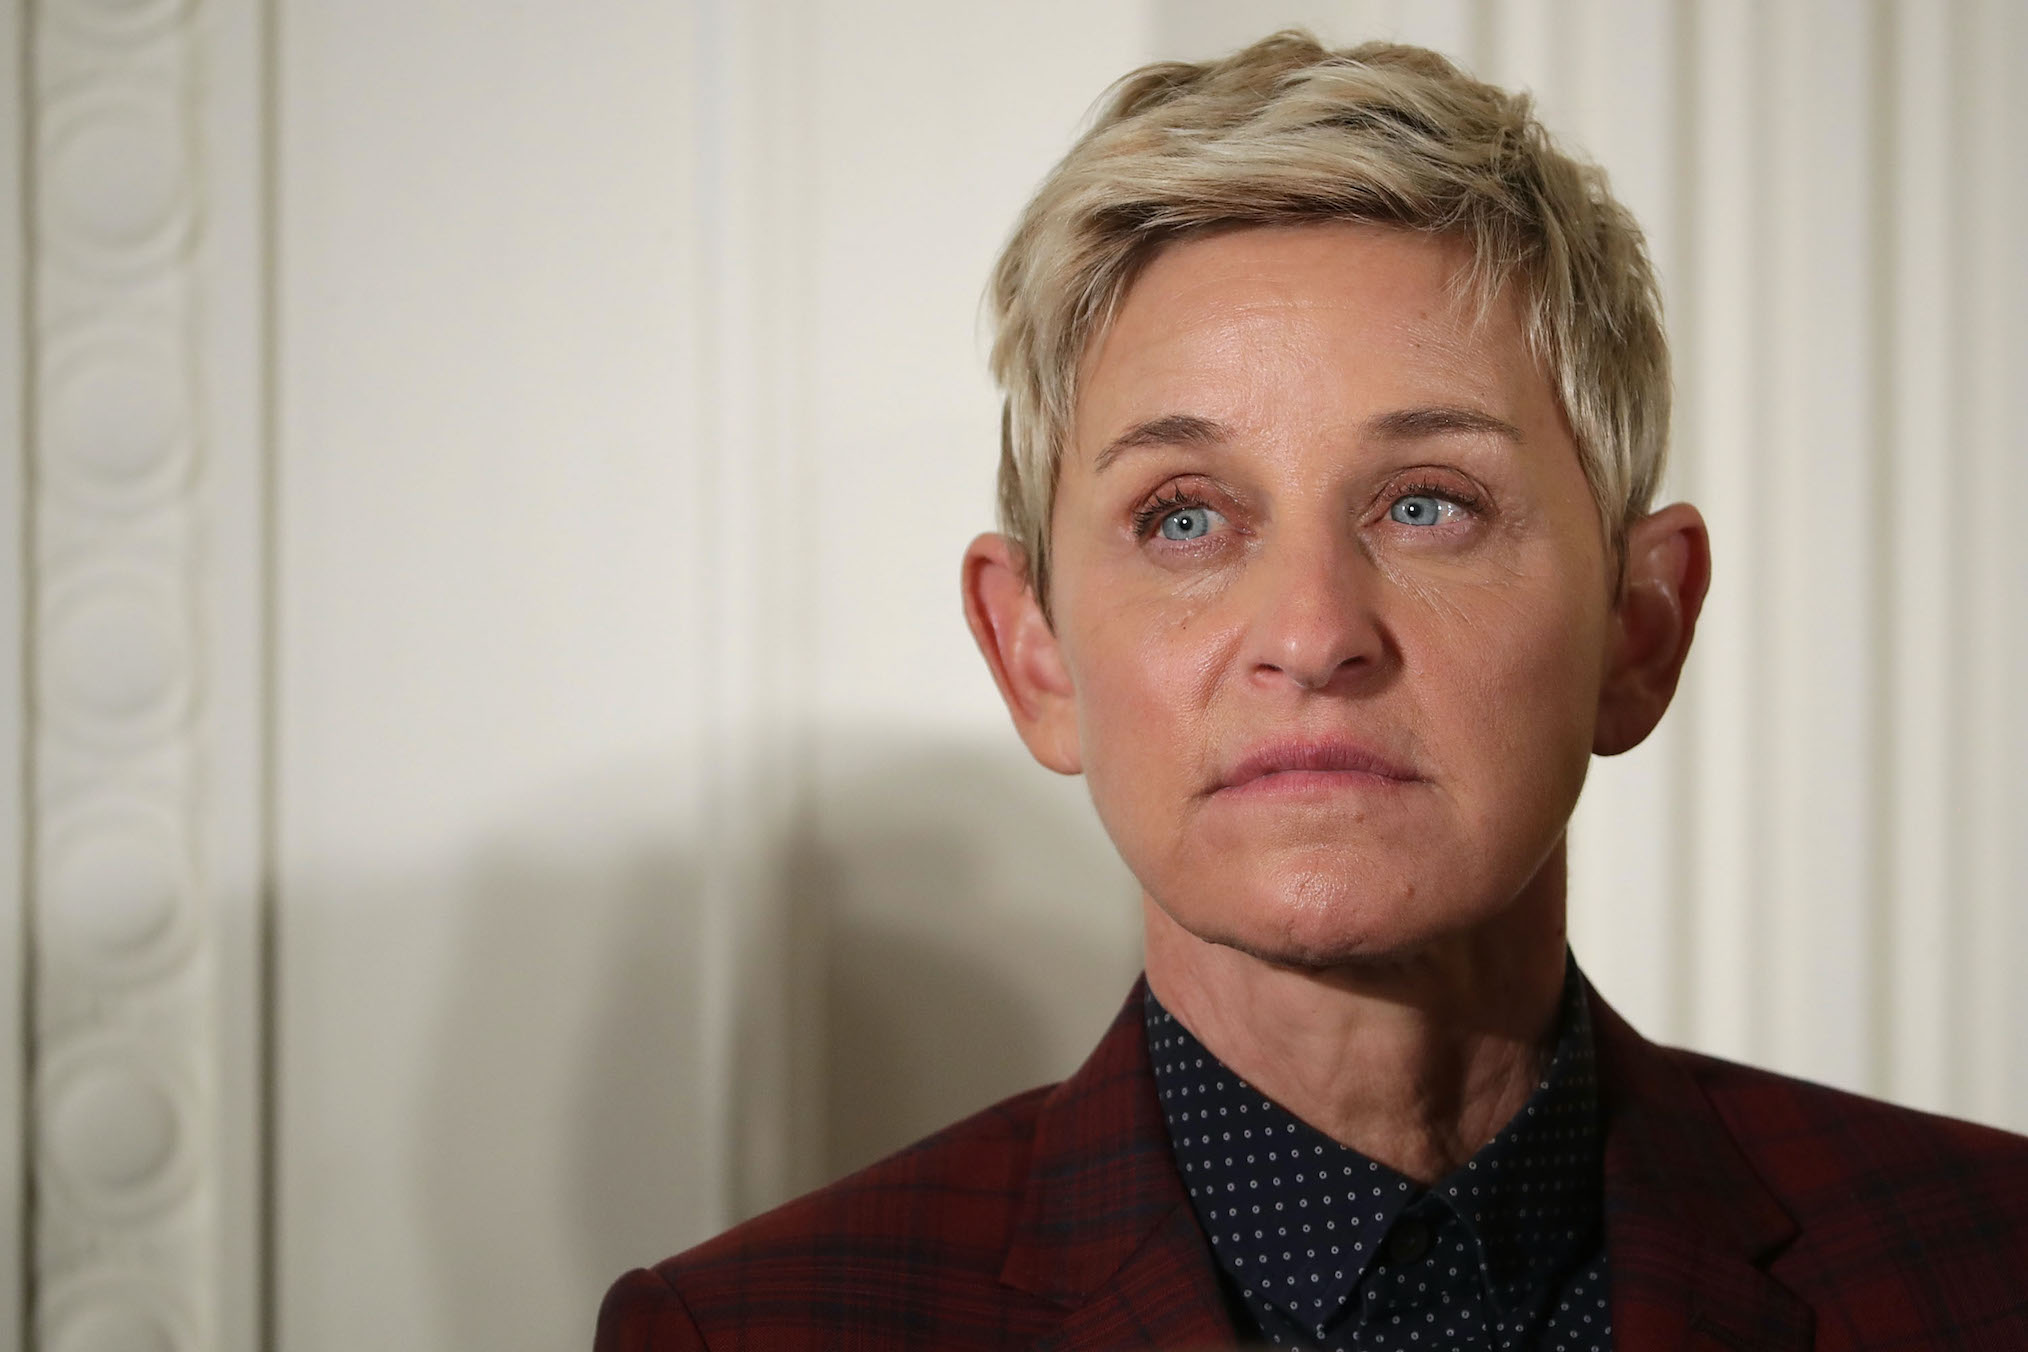 Ellen Deneres 2016 New Porn - A Brief History of Backlash Against Ellen DeGeneres